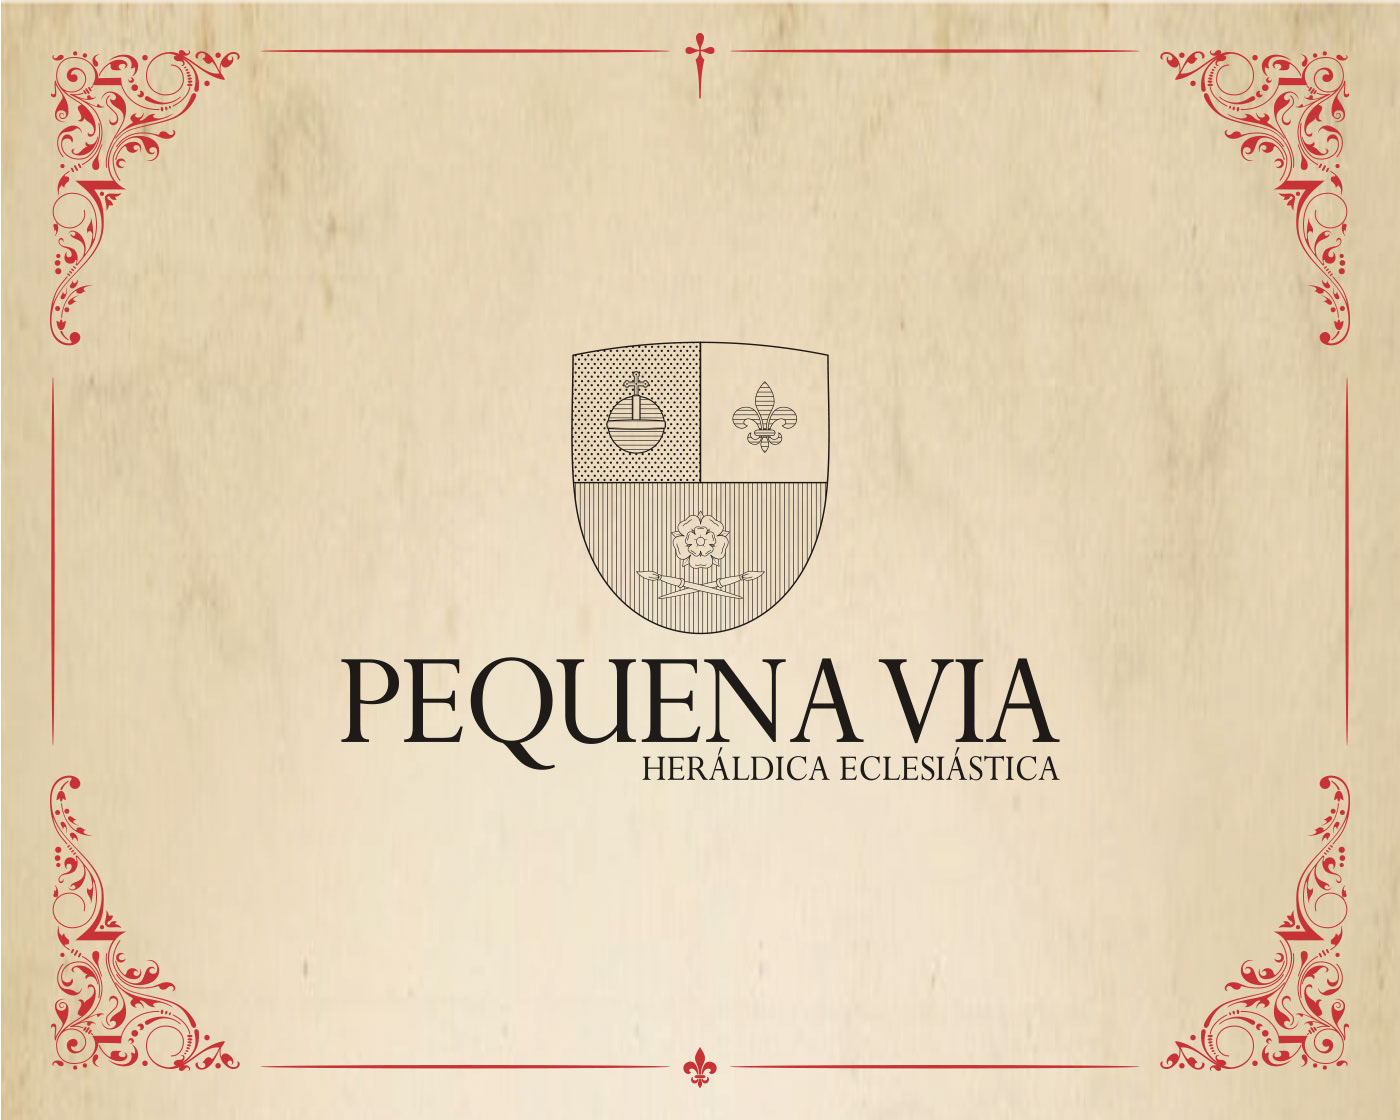 brasão Catholic católico design design gráfico graphic design  heraldica heráldica eclesiástica heraldry shield